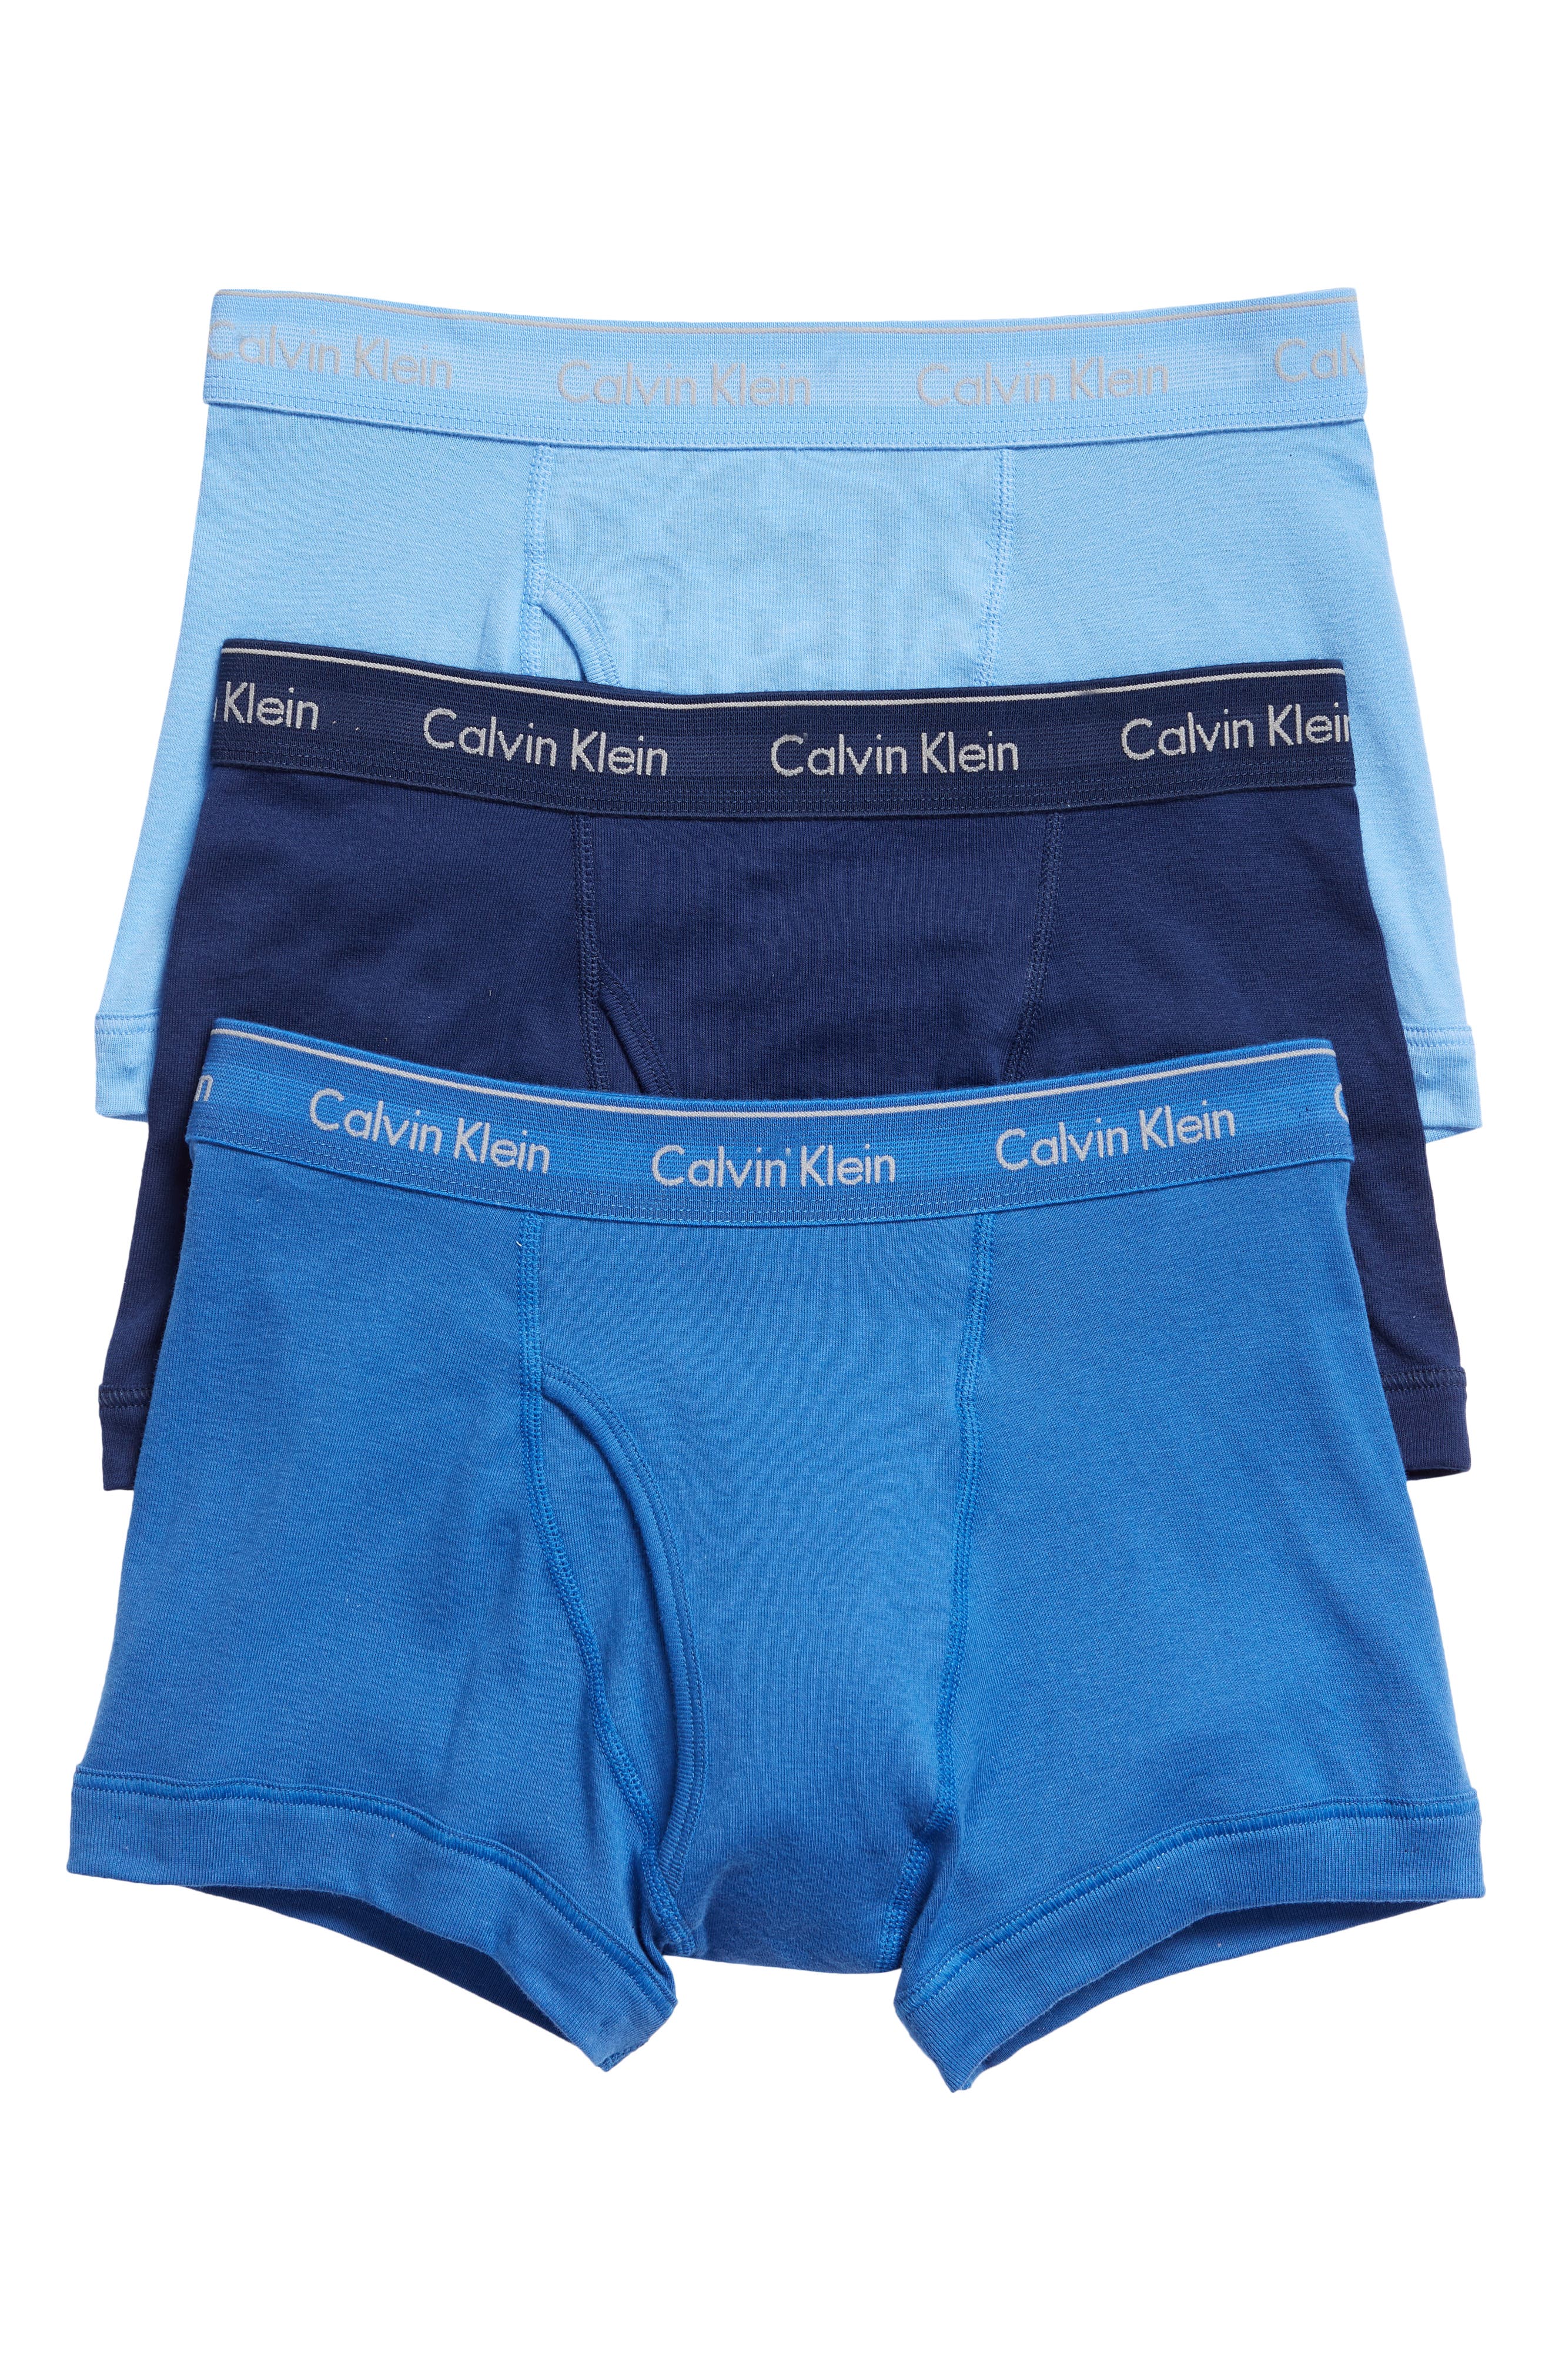 calvin klein clothing online